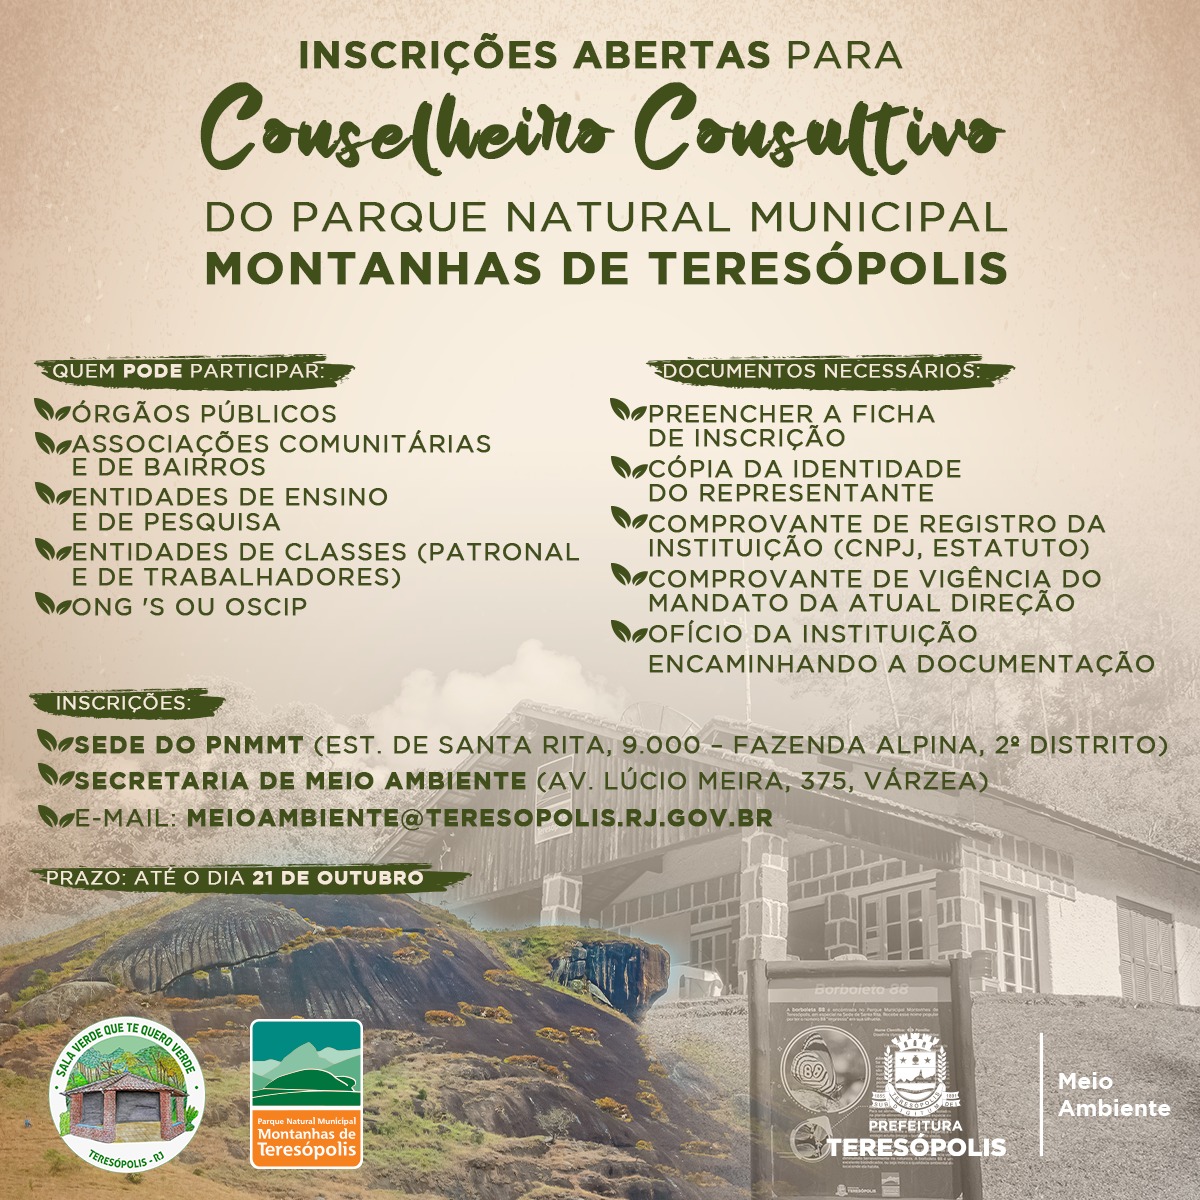 Você está visualizando atualmente Abertas as inscrições para Conselheiro Consultivo no Parque Municipal Montanhas de Teresópolis